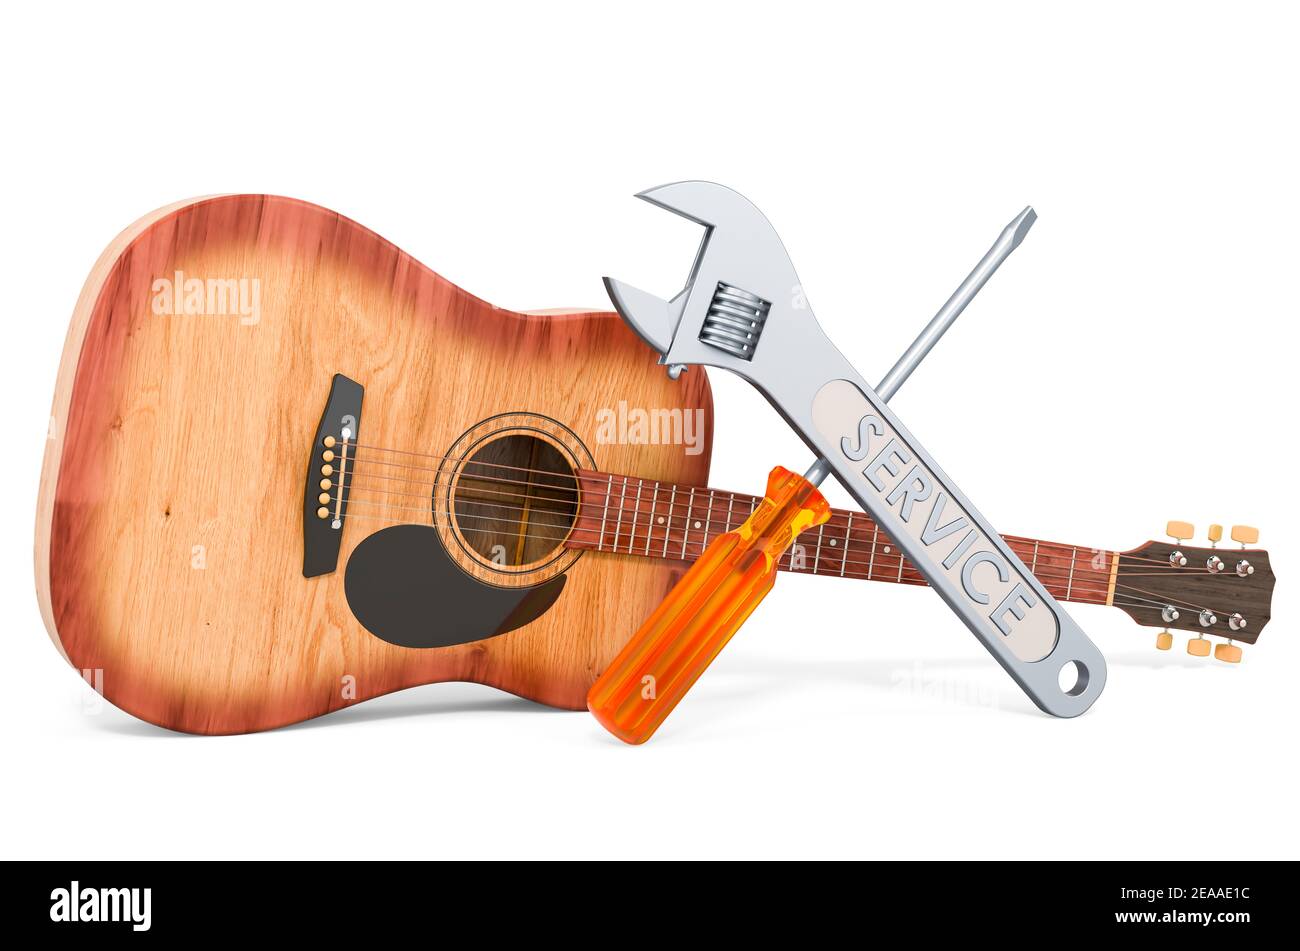 Guitar repair Banque d'images détourées - Alamy